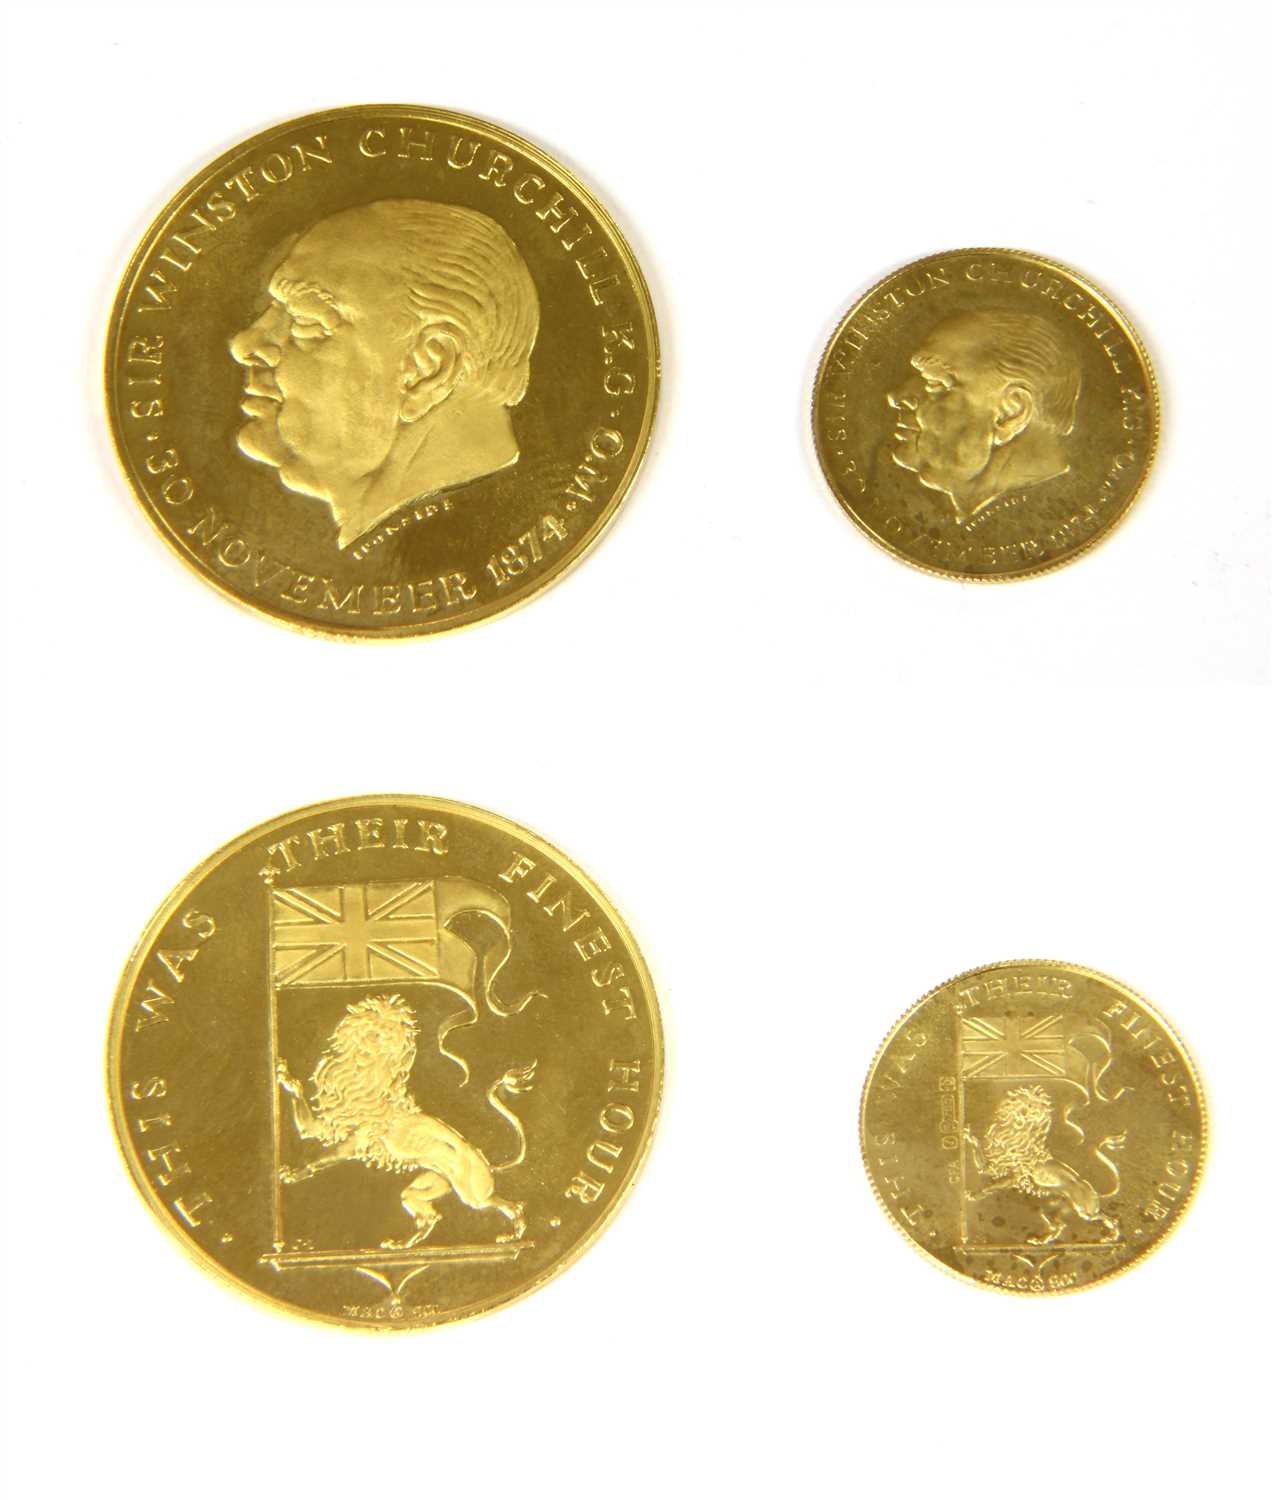 Lot 220 - Medallions, Sir Winston Churchill commemorative medallions